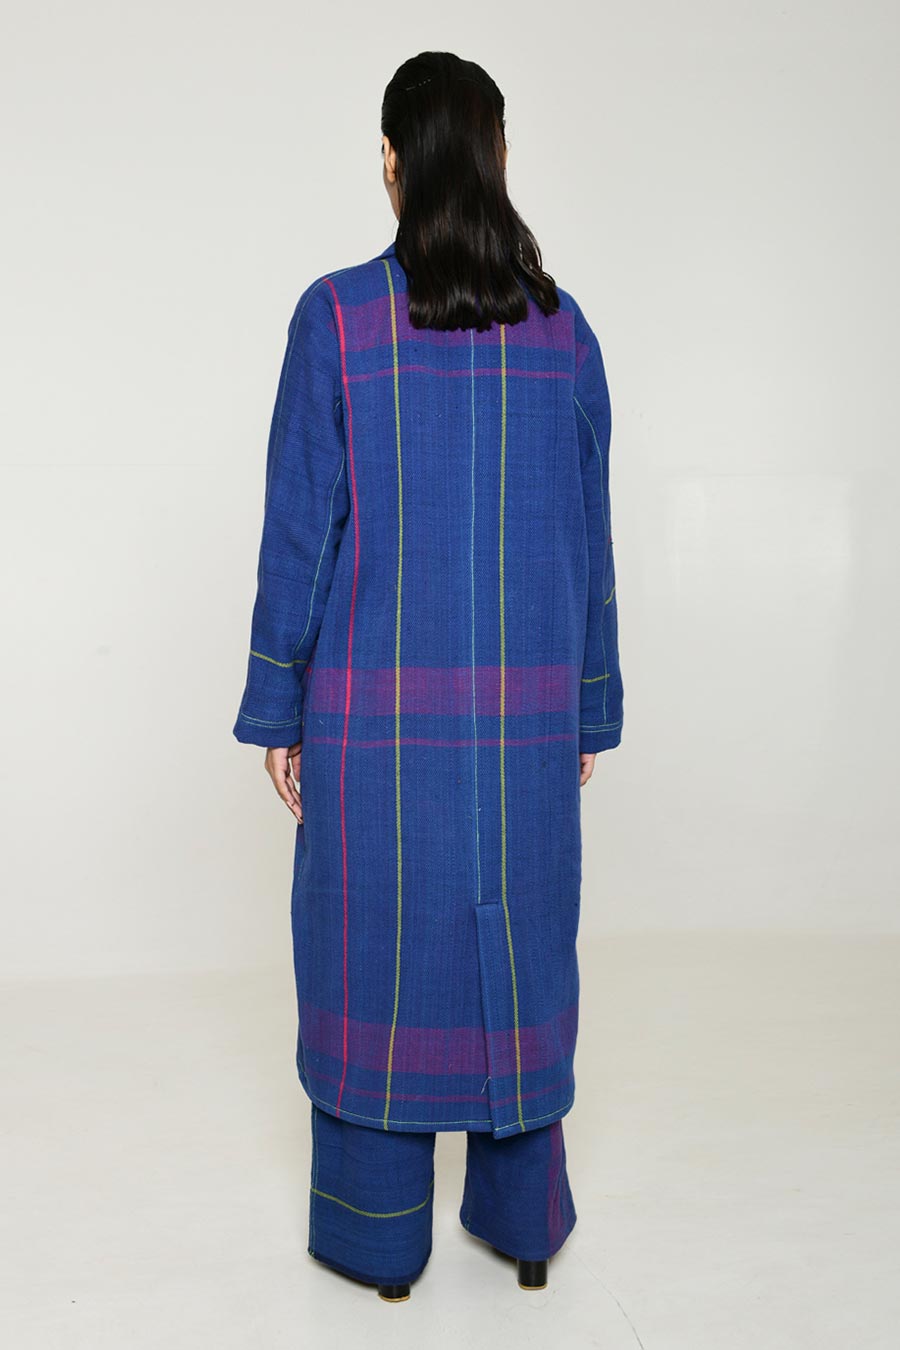 Blue Recycle Ren Women Trench Coat